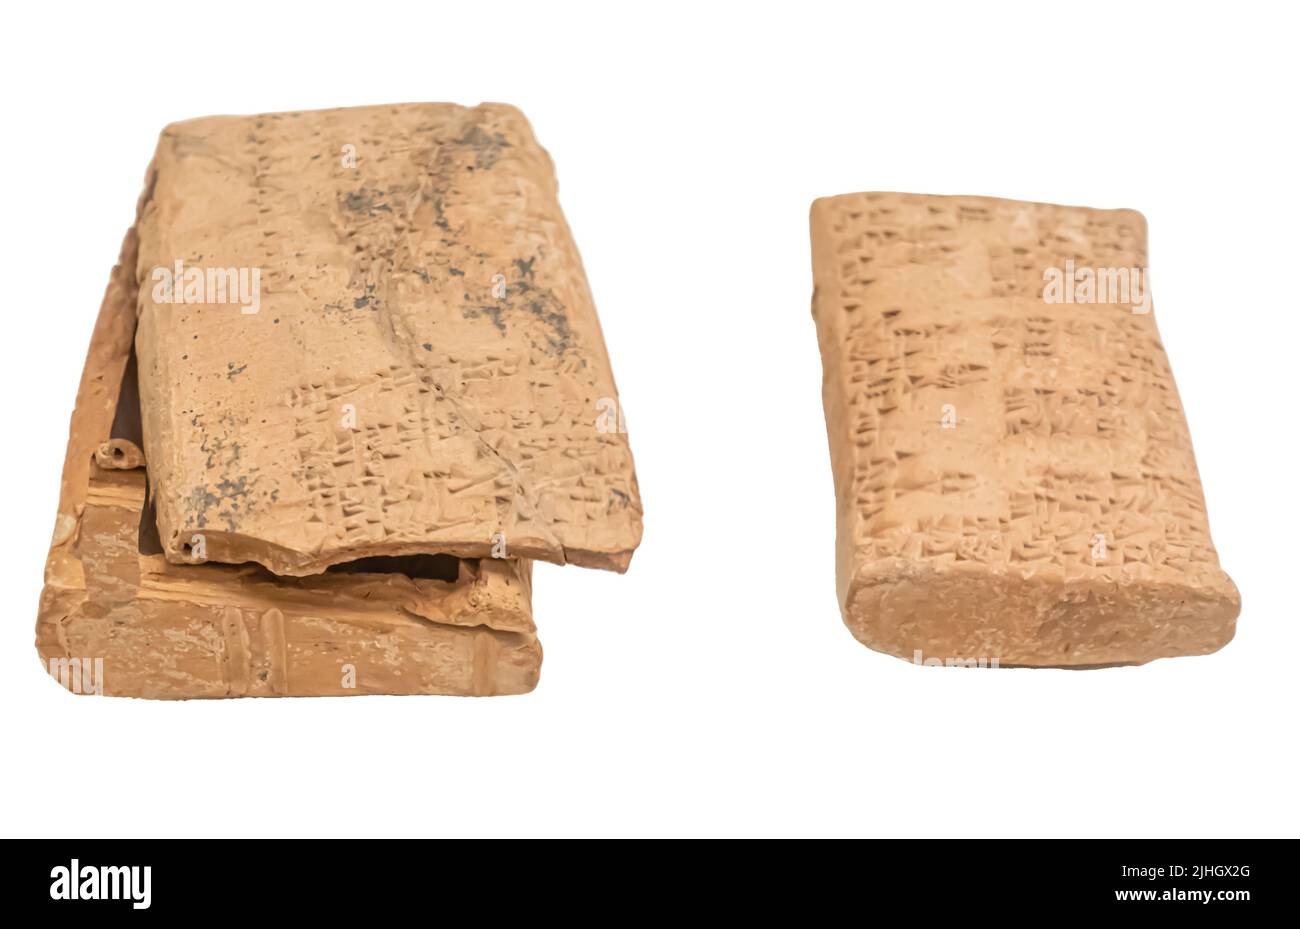 Rechtliche und administrative Dokumente in sumerischer und akkadischer Sprache. Babylonien. Anfang 2. Jahrtausend v. Chr. Stockfoto